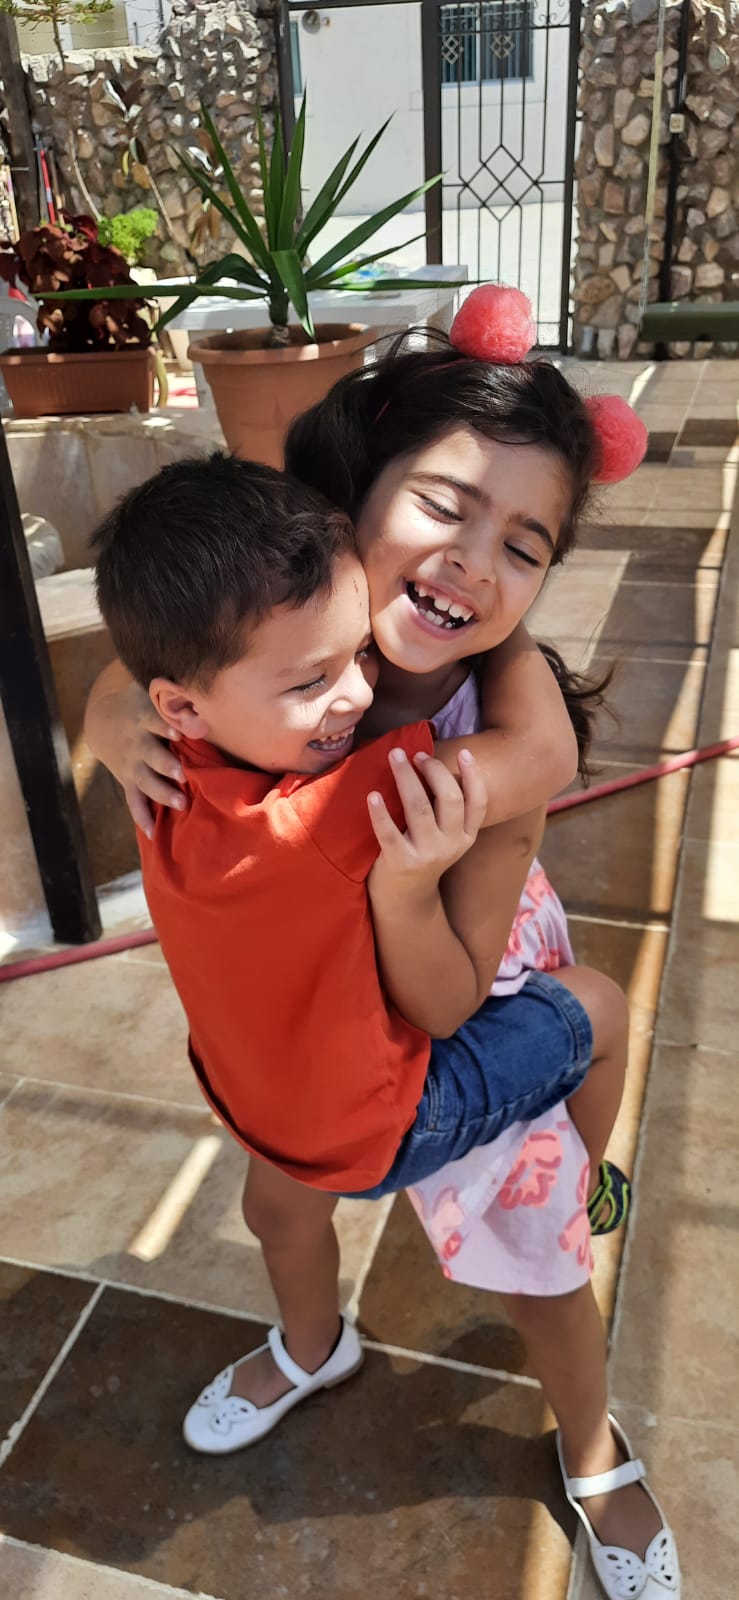 الطفلين سيف ومها لحظة فرح بحضن عمان